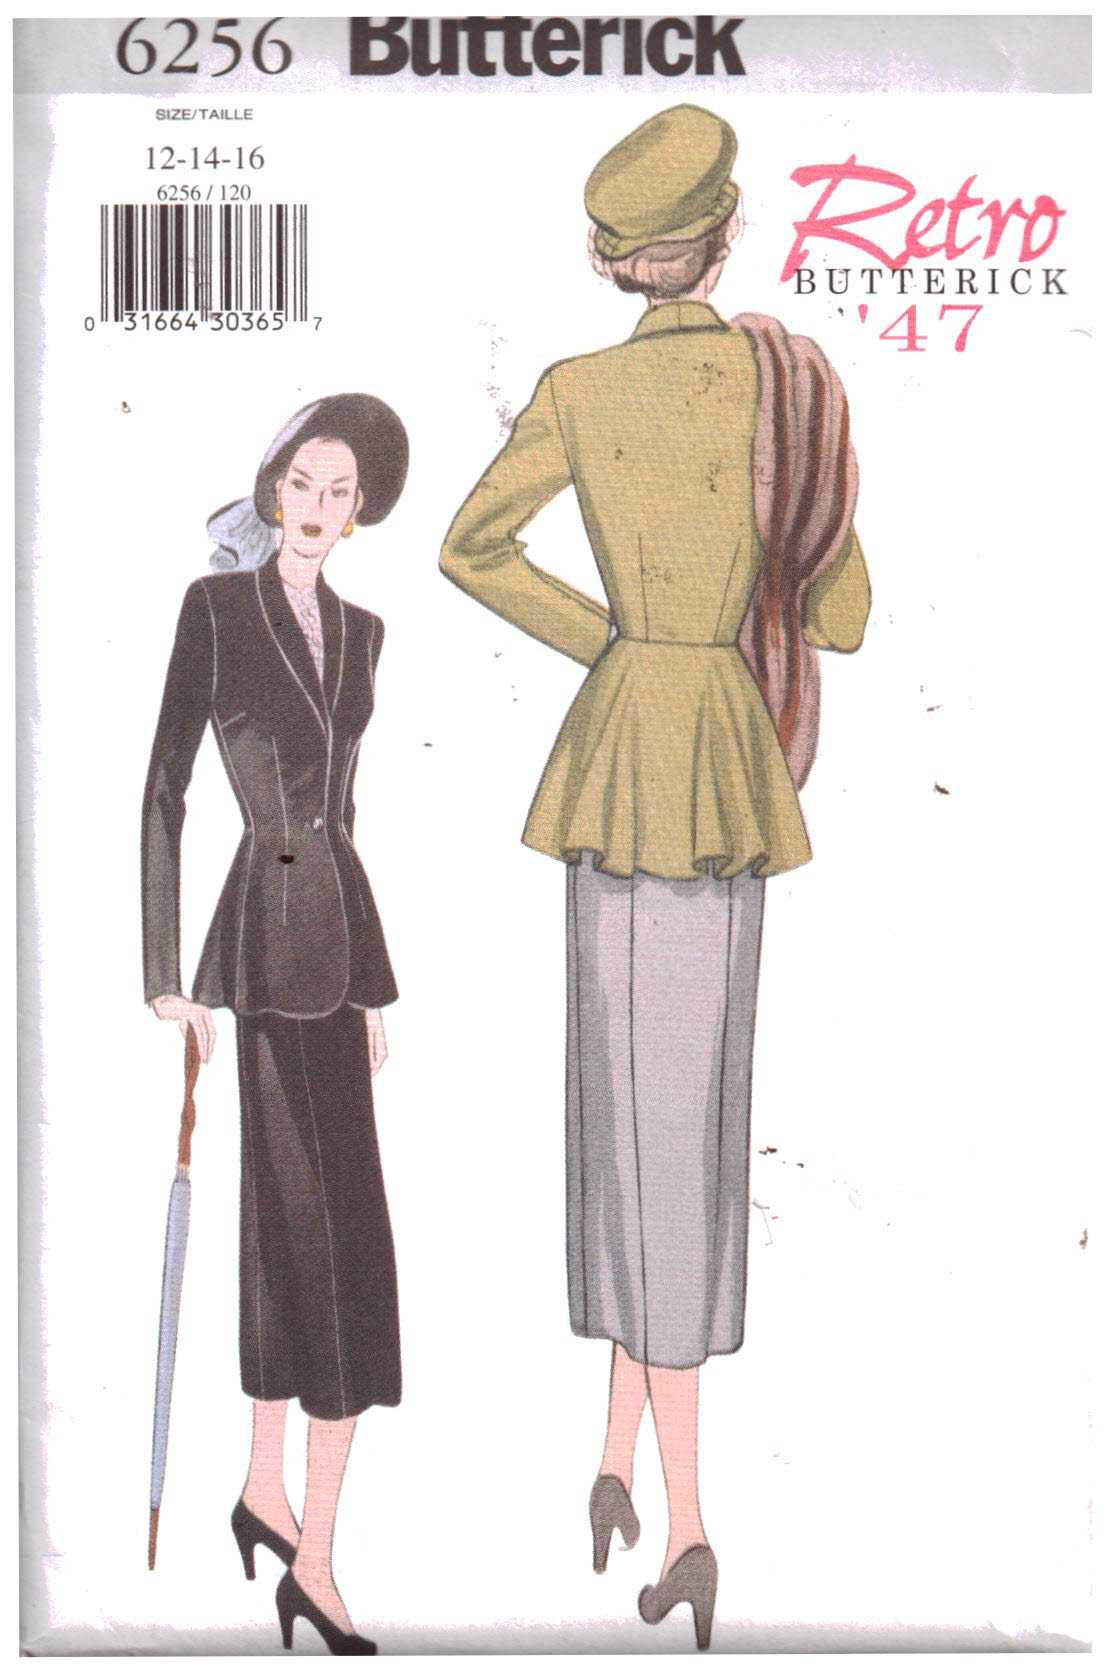 Butterick 6256 Suit - Jacket, Skirt Retro 1947 Size: 12-16 Uncut Sewing ...